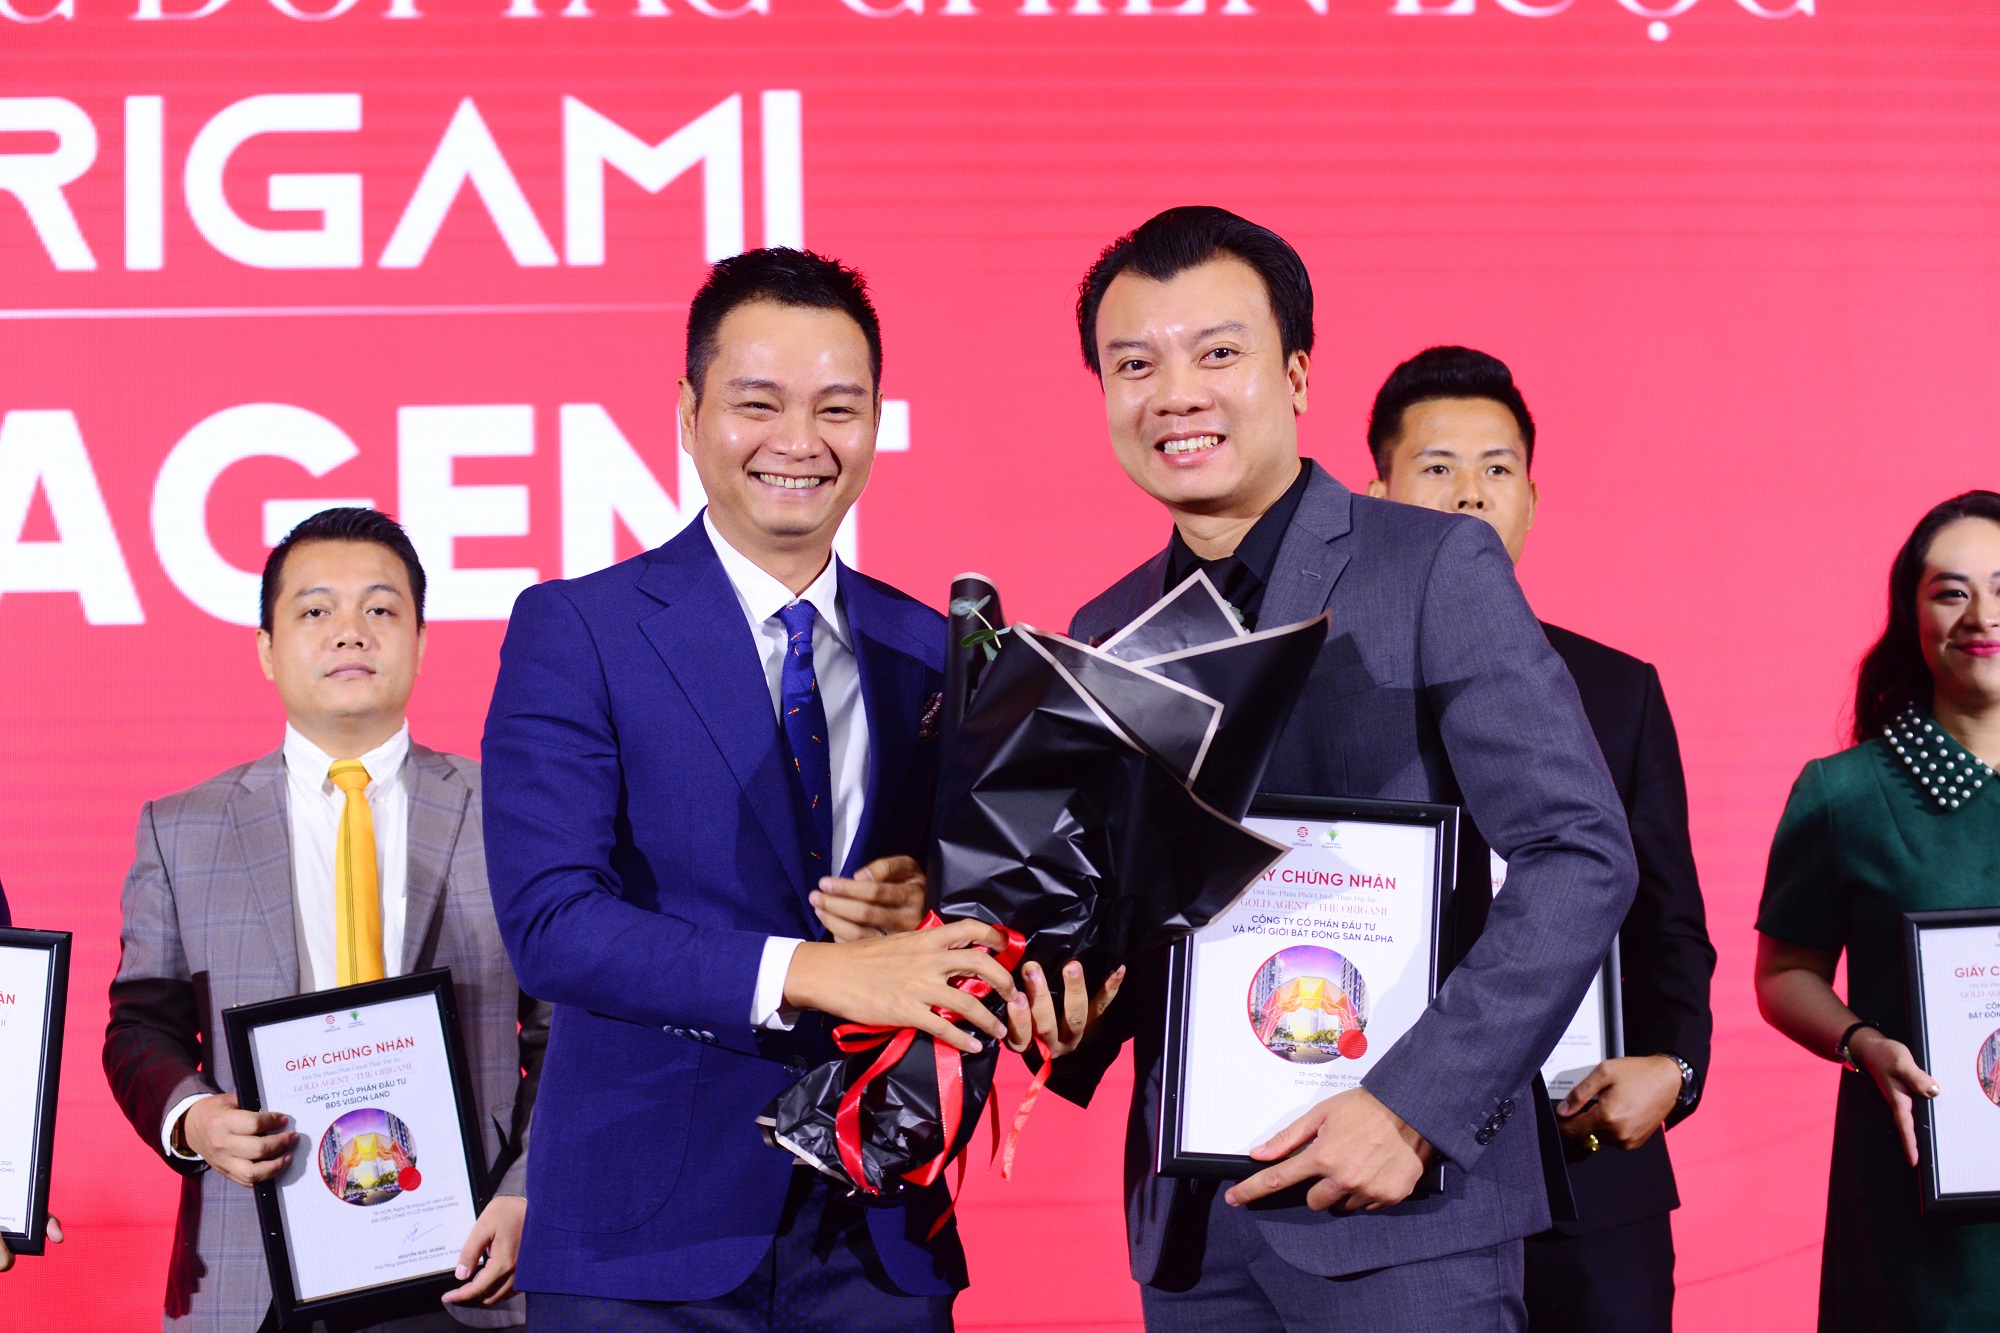 Ông Nguyễn Đức Quang - Phó Tổng giám đốc Kinh Doanh và Marketing của Vinhomes trao hoa cho Ông Hoàng Liên Sơn - Tổng giám đốc Alpha Real